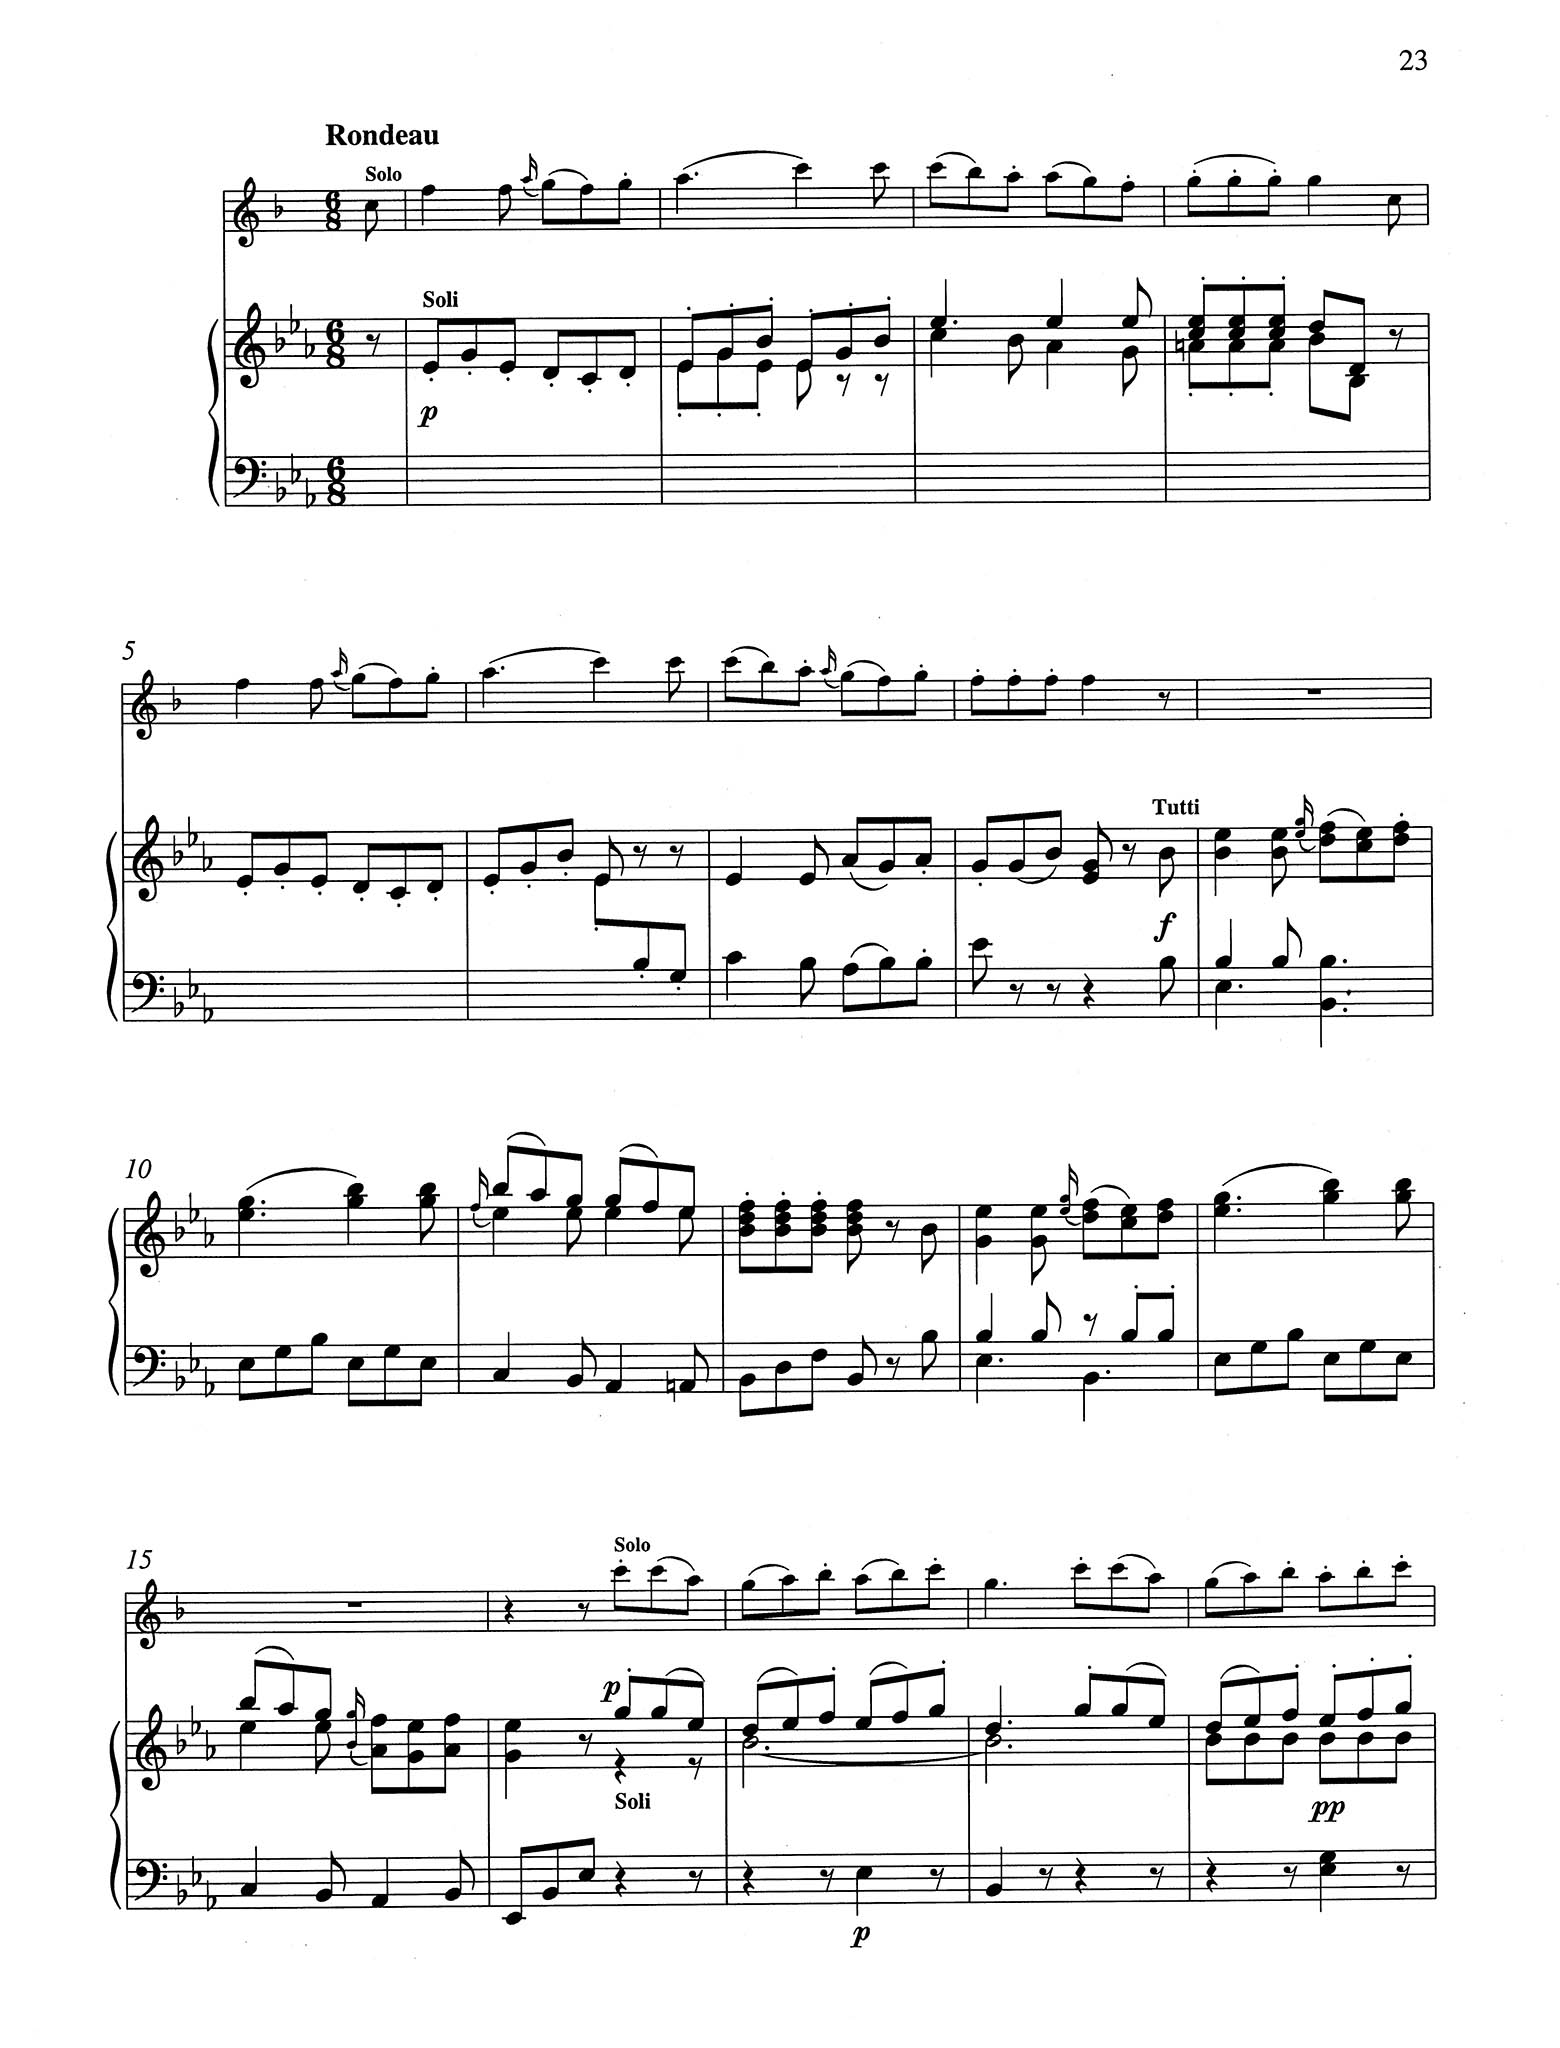 Clarinet Concerto No. 6 (Kaiser) in E-flat Major - Movement 3